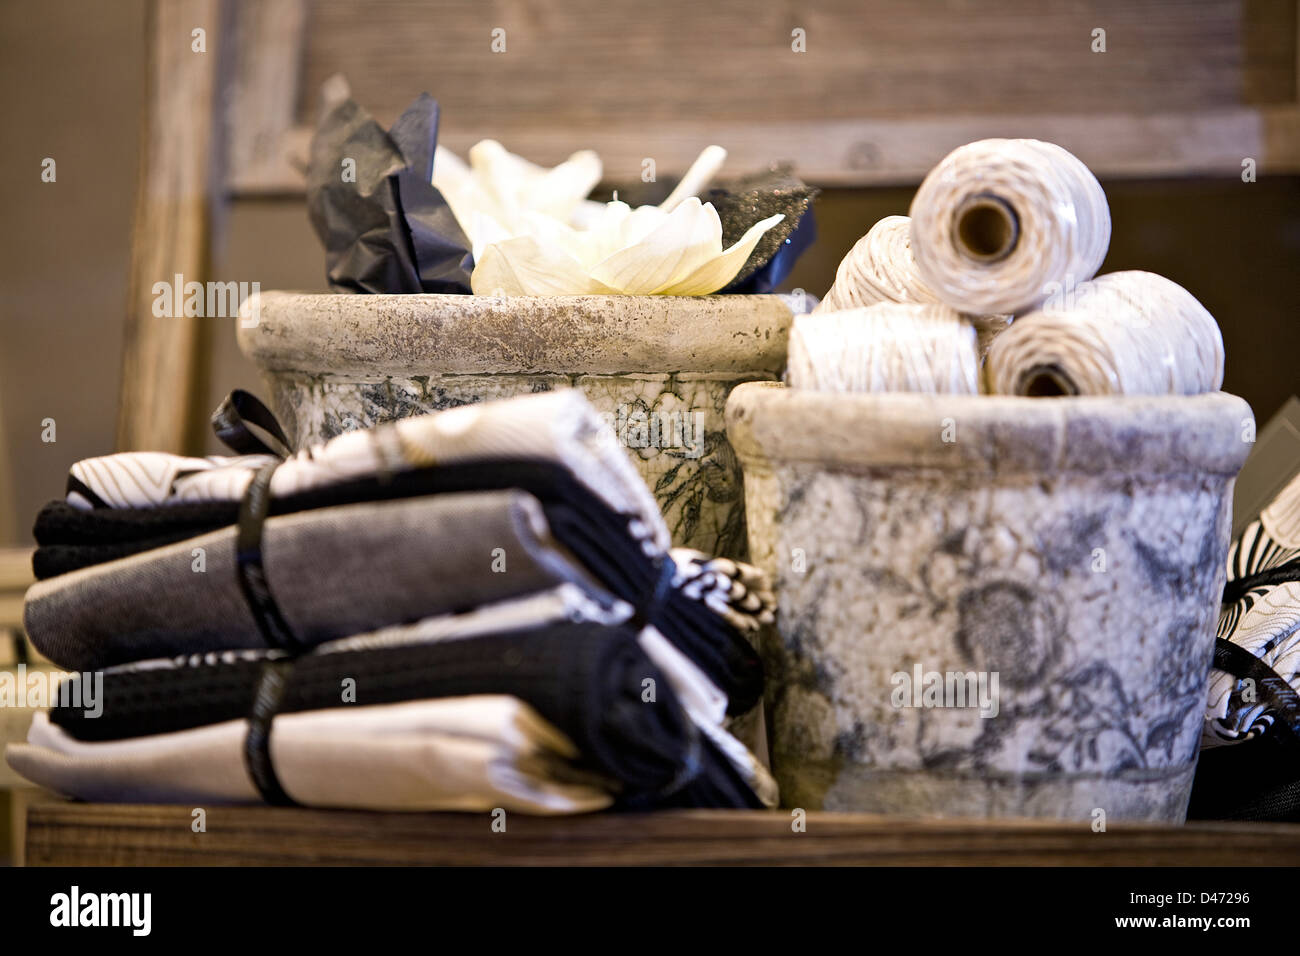 Innere Bild ordentlich gefaltet und gebunden Küchentücher neben Keramik Töpfe mit Rollen Schnur angebracht. Stockfoto